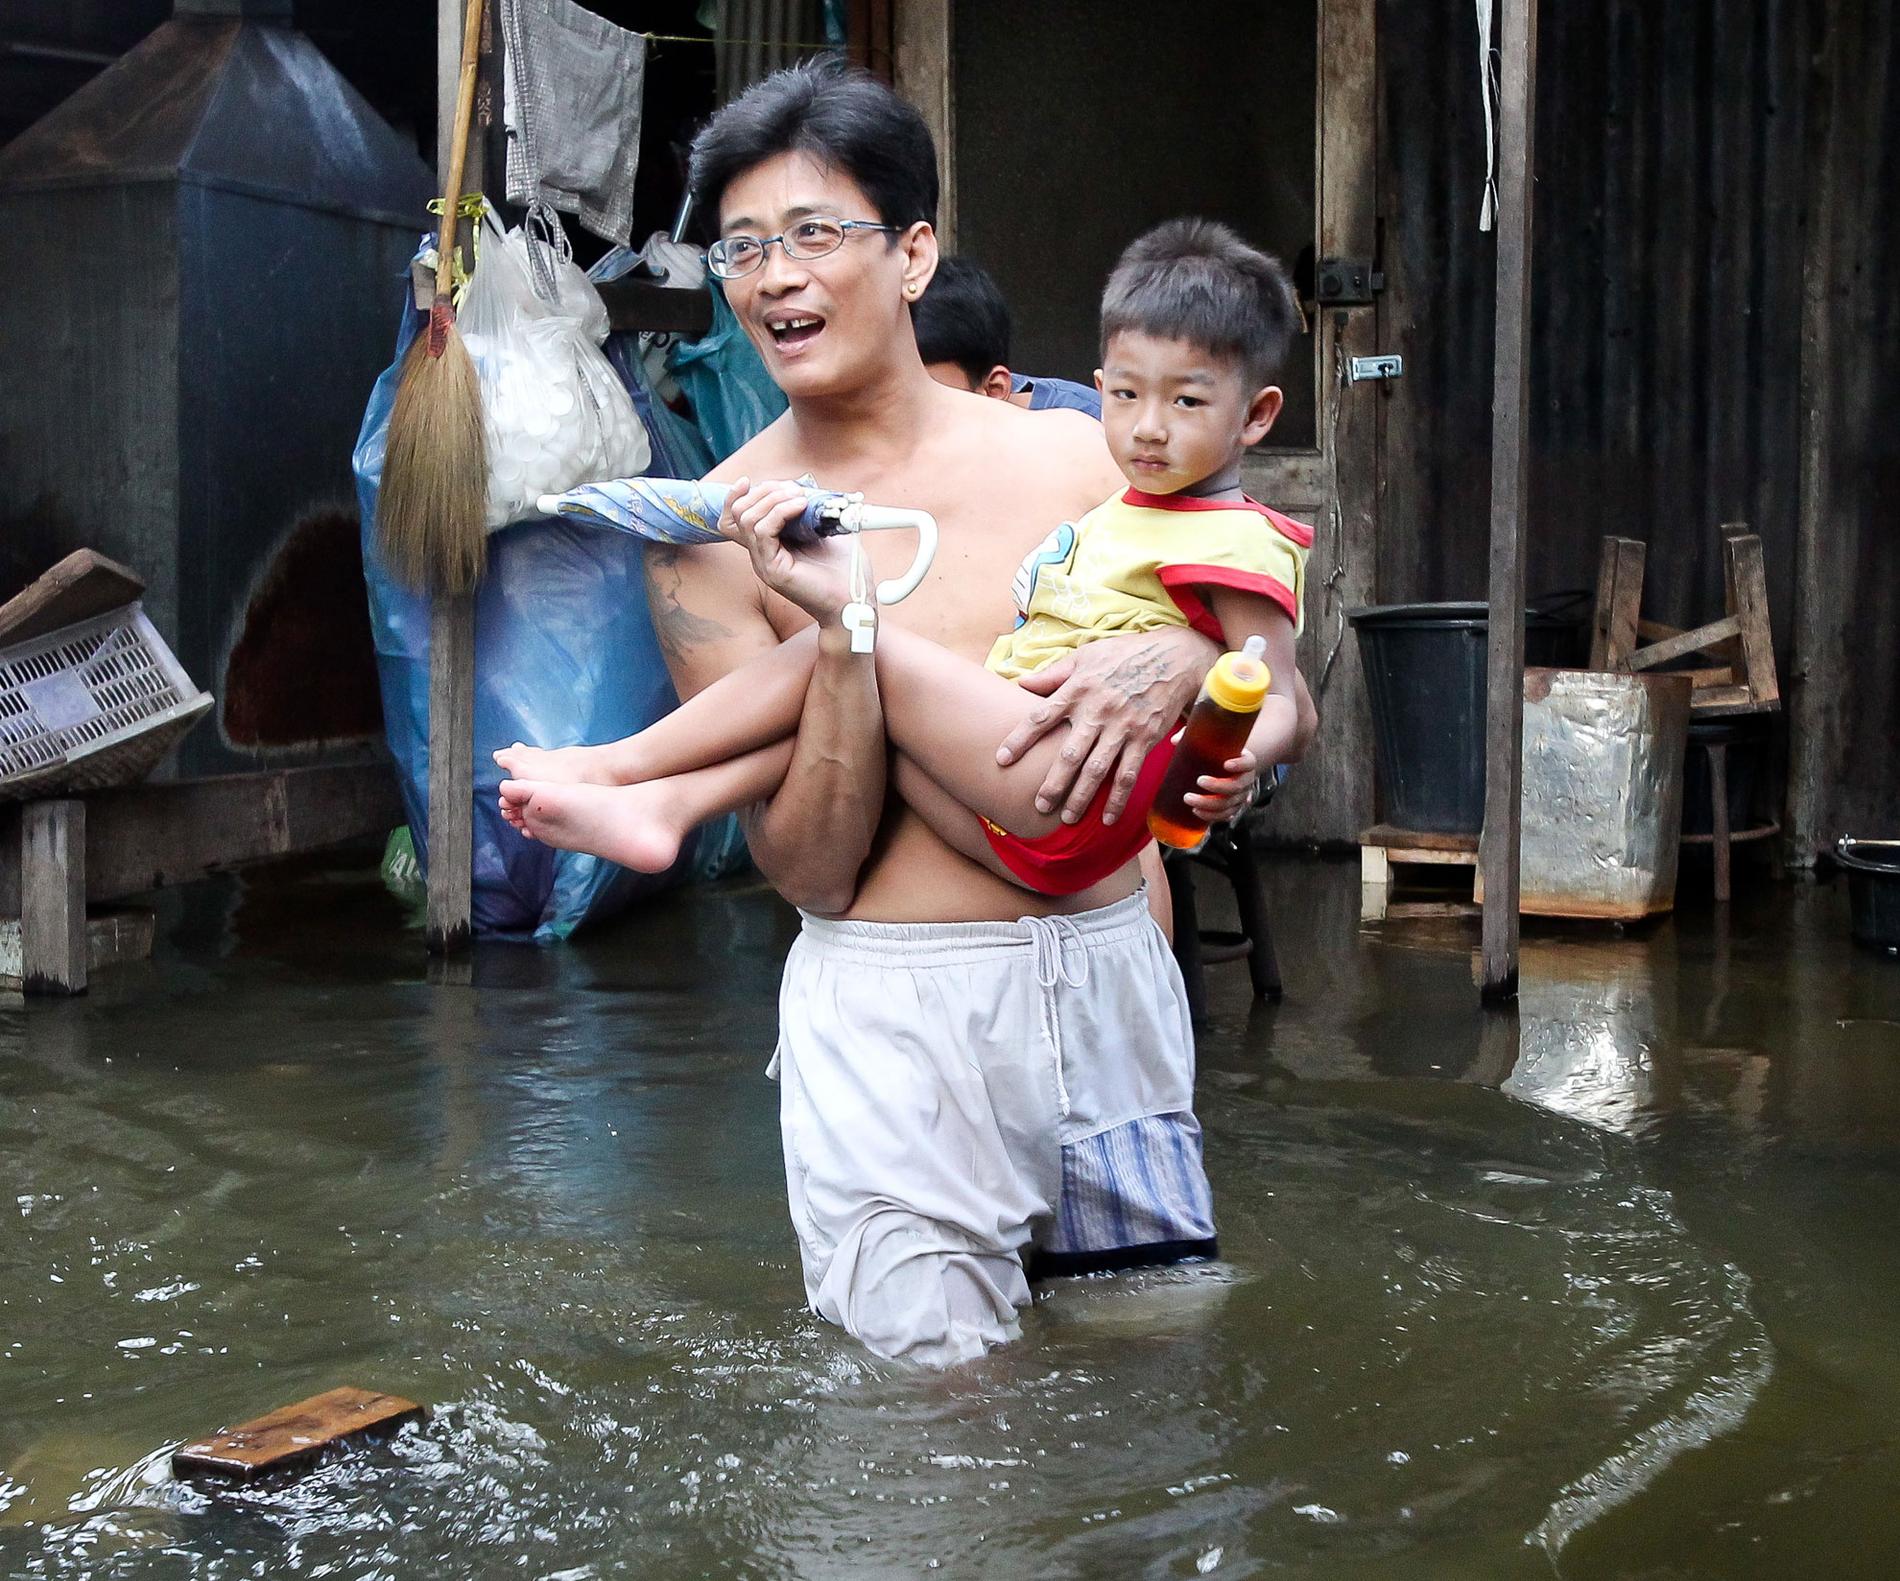 DRABBAS FÖRST. Far och son kämpar sig genom vattenmassorna i Bangkok i Thailand. Landet drabbades hårt av det kraftiga sommar­regnet i slutet av förra året. Asien och Stillahavsområdet påverkas mest av klimatförändringarna.Foto: Dennis THERN